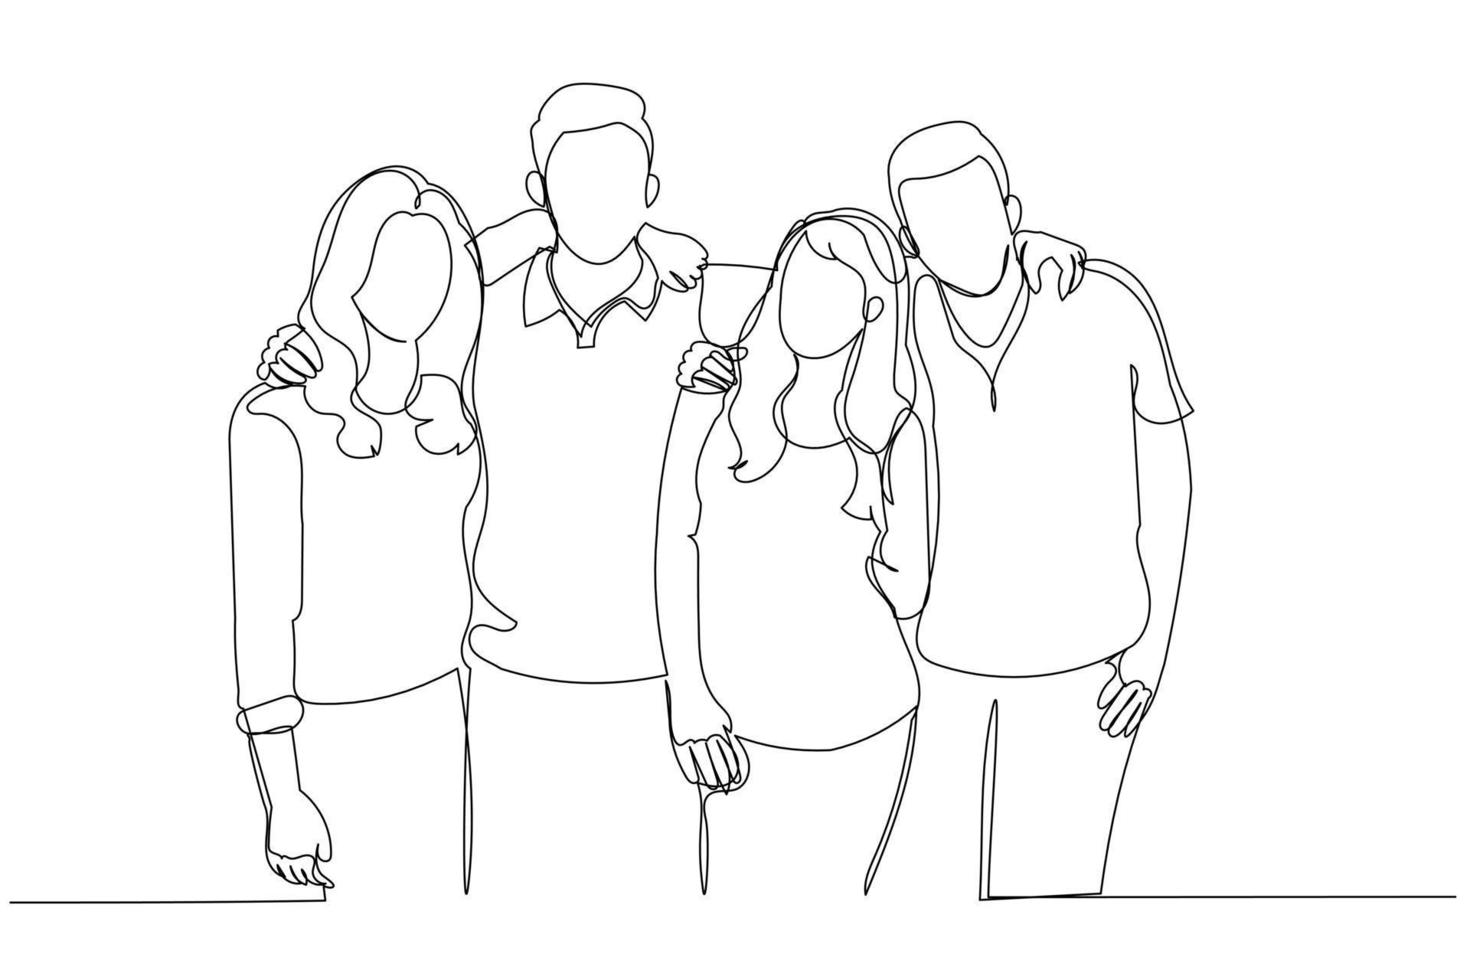 Zeichnung einer Gruppe von Freunden, die sich umarmen. Kunststil mit einer durchgehenden Linie vektor